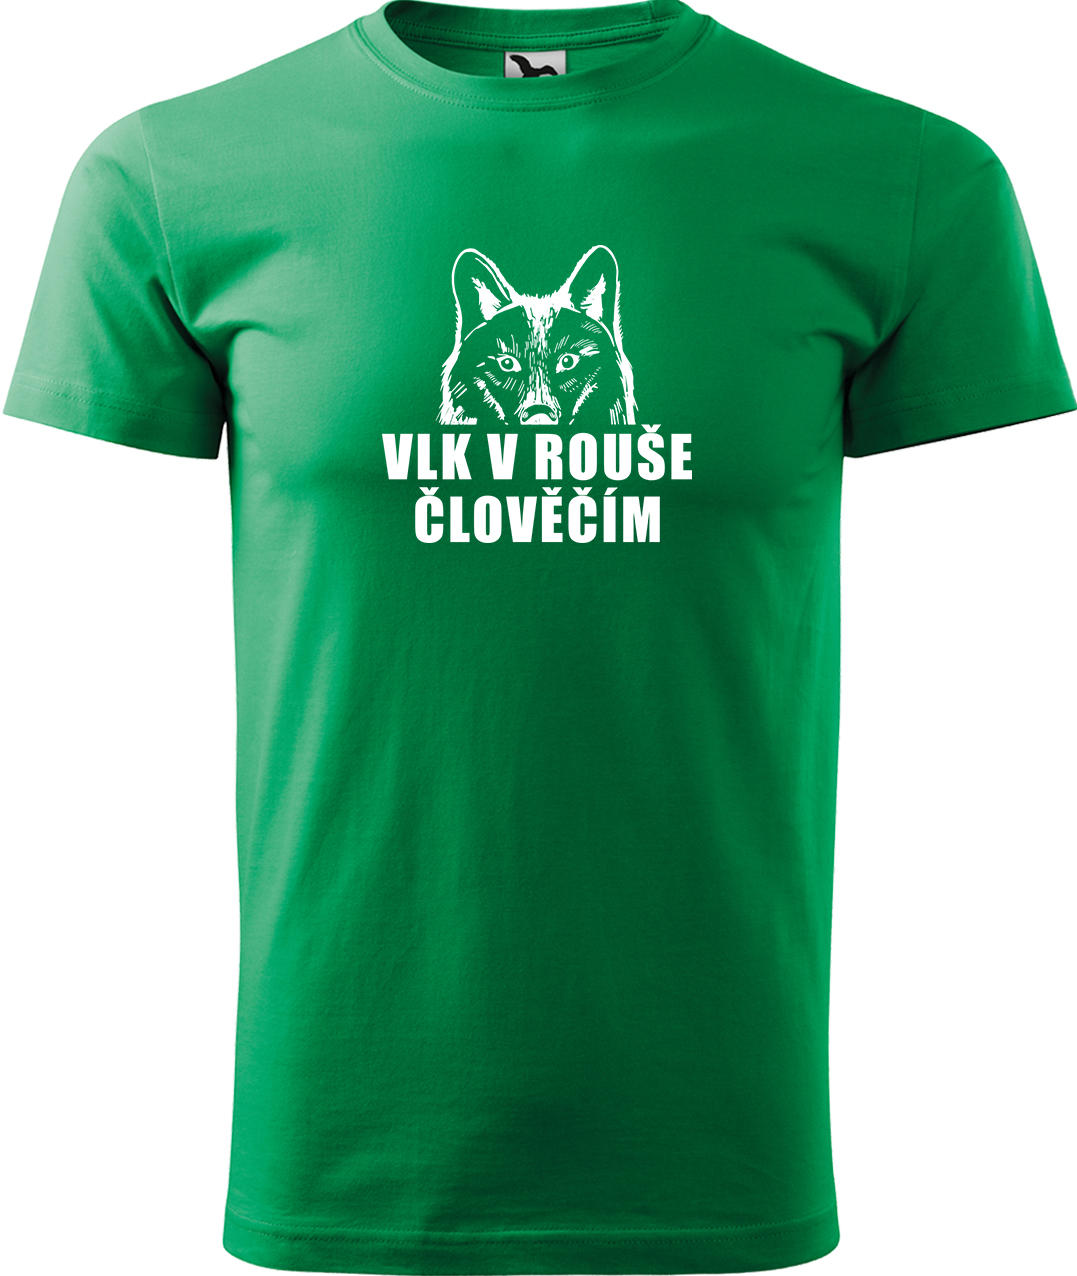 Pánské tričko s vlkem - Vlk v rouše člověčím Velikost: S, Barva: Středně zelená (16)